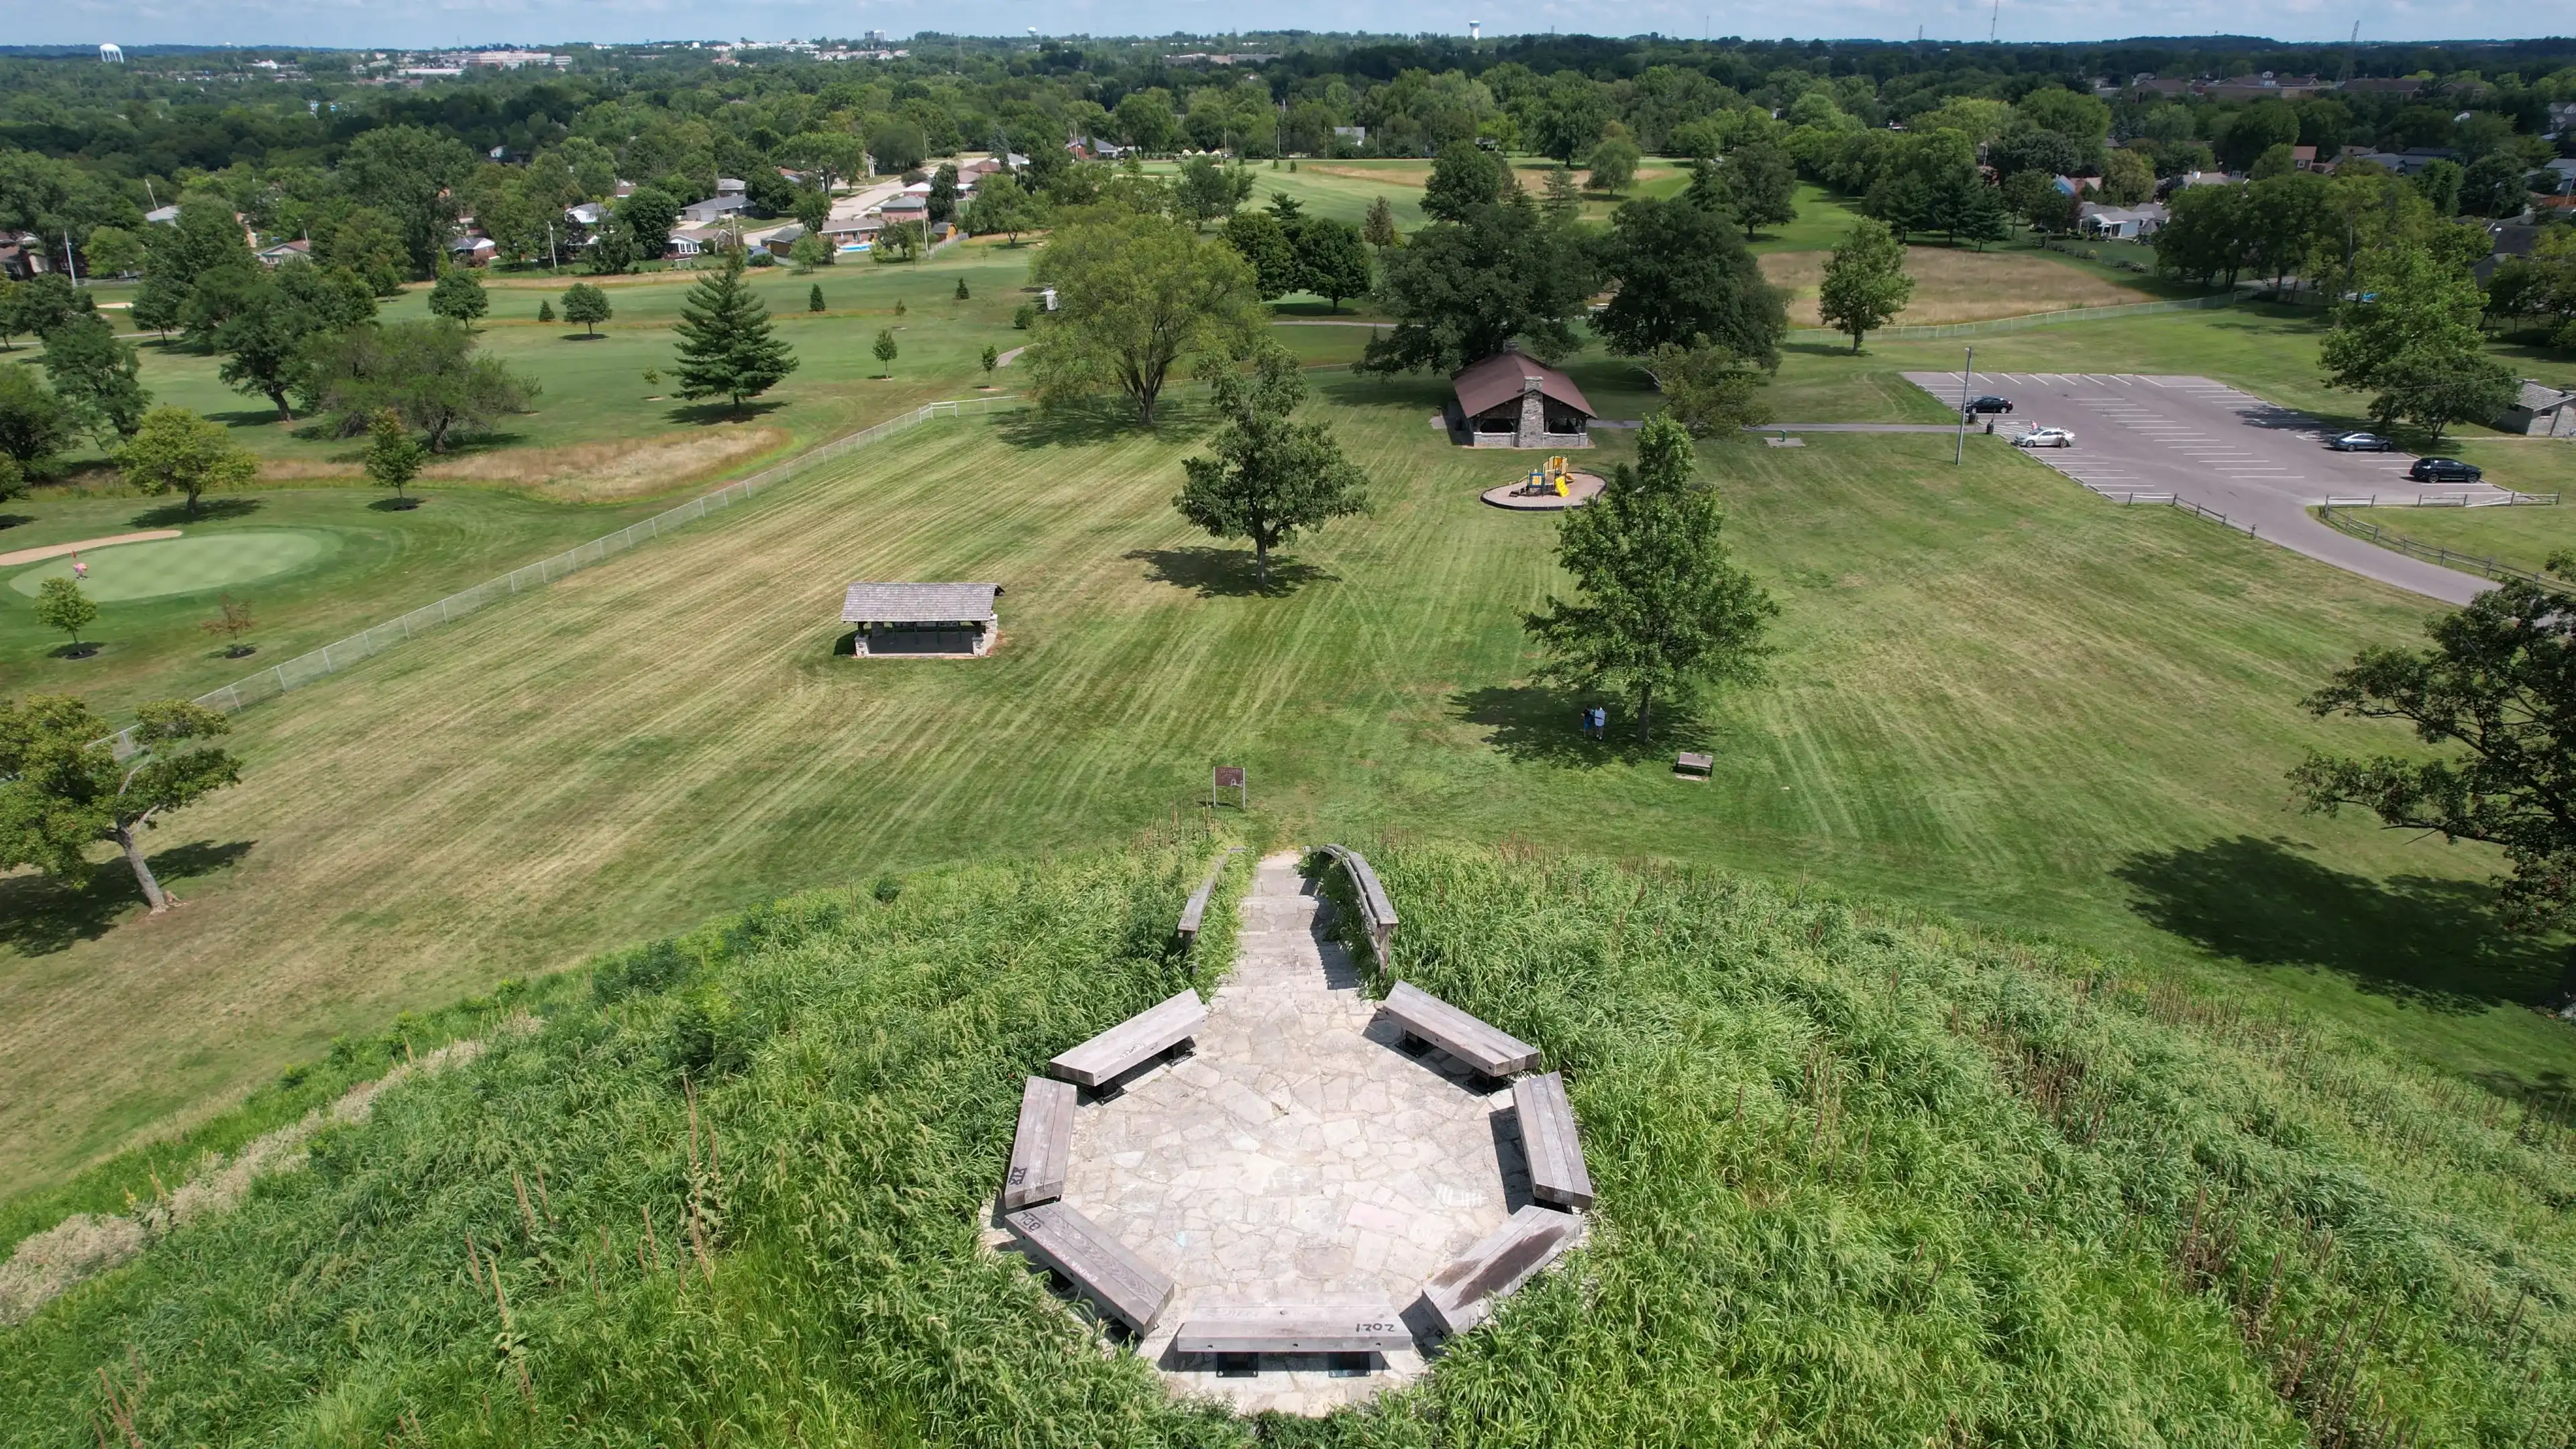 Mound park in Miamisburg Ohio